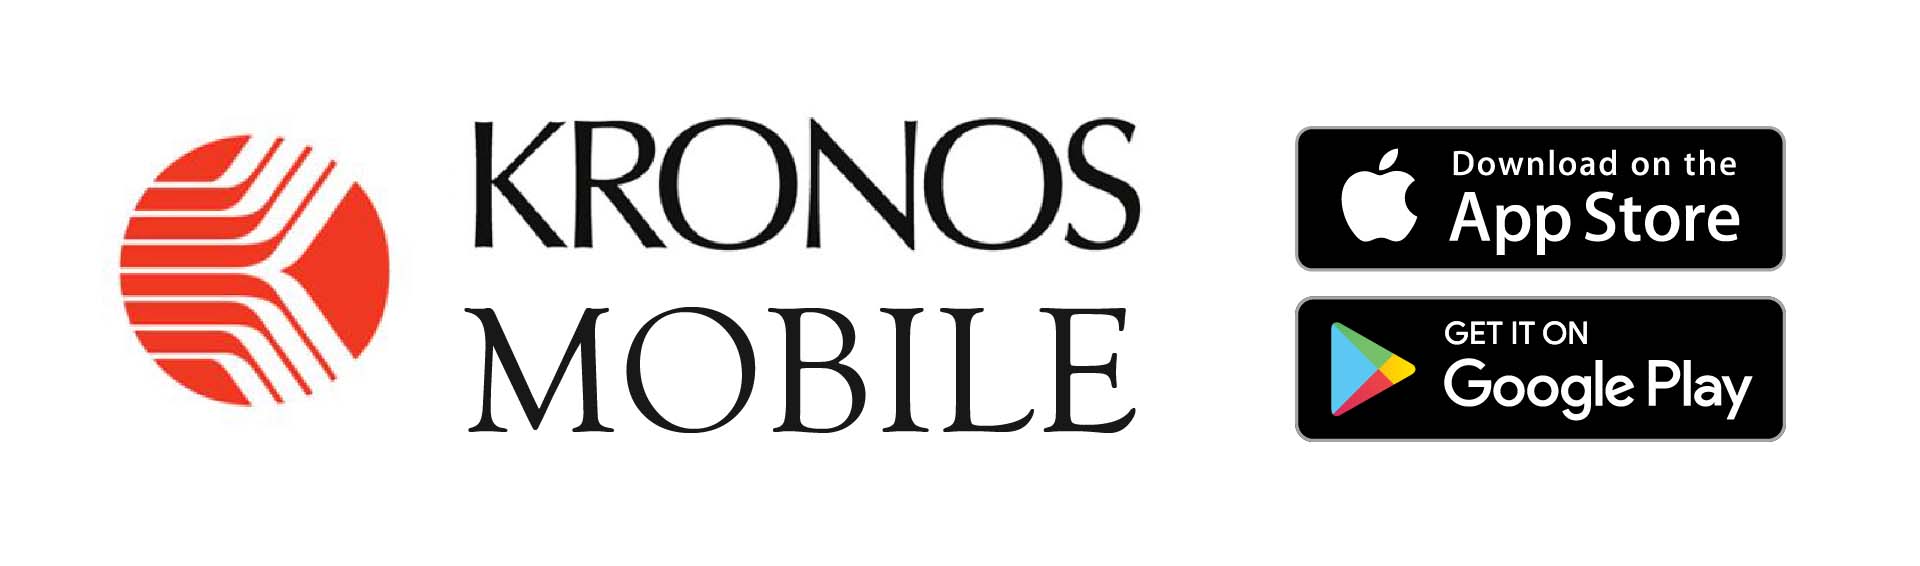 Kronos Mobile: The Hidden Gem at Village